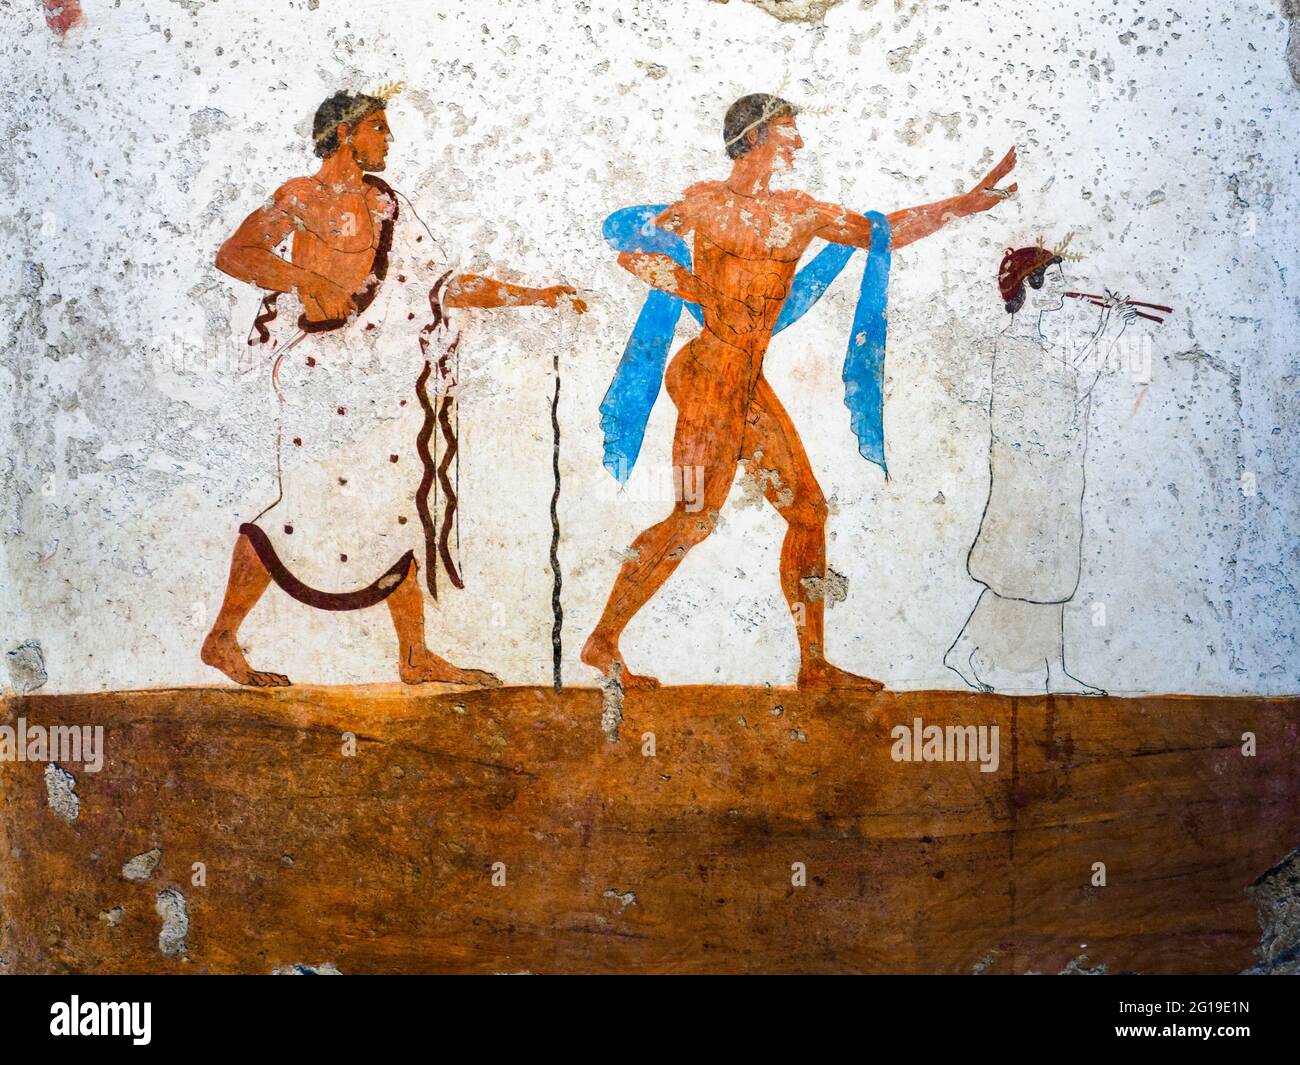 Fresco de la 'Tumba del Diver' (Tomba del Tuffatore) 480/70 aC - Área Arqueológica de Paestum - Salerno, Italia Foto de stock